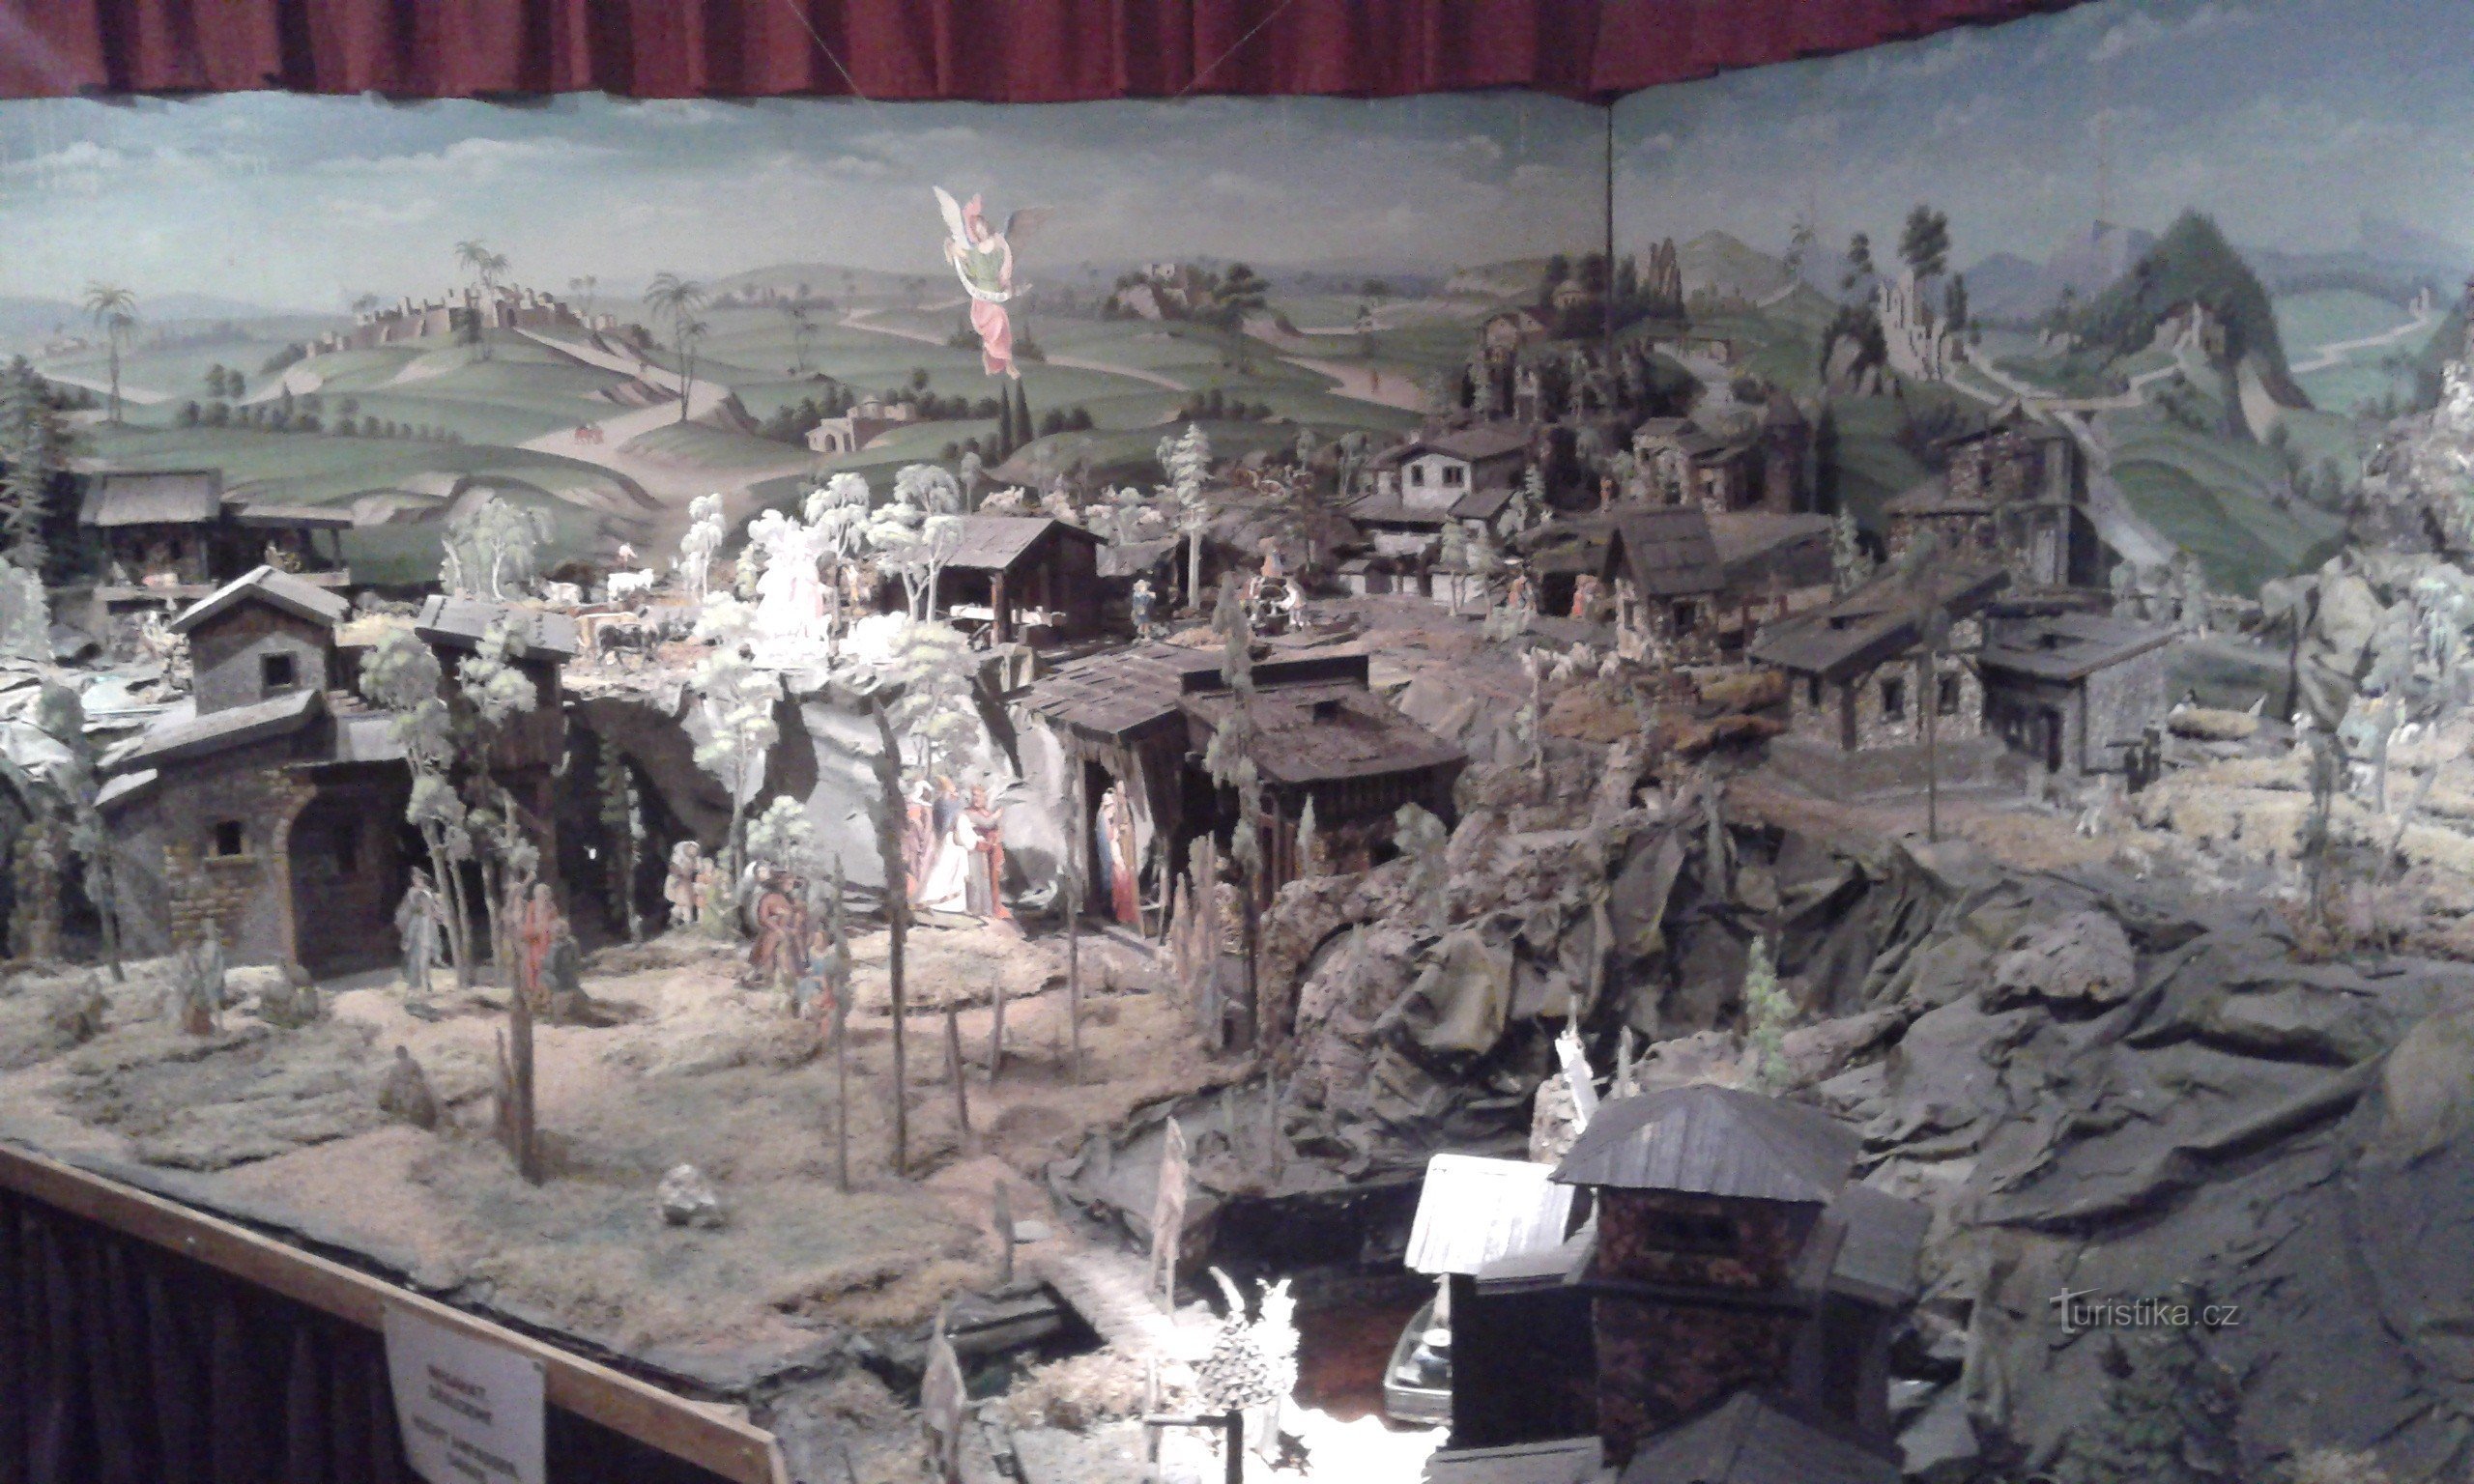 Museo de belenes, juguetes e historia del pueblo - Kryštofovo údolí